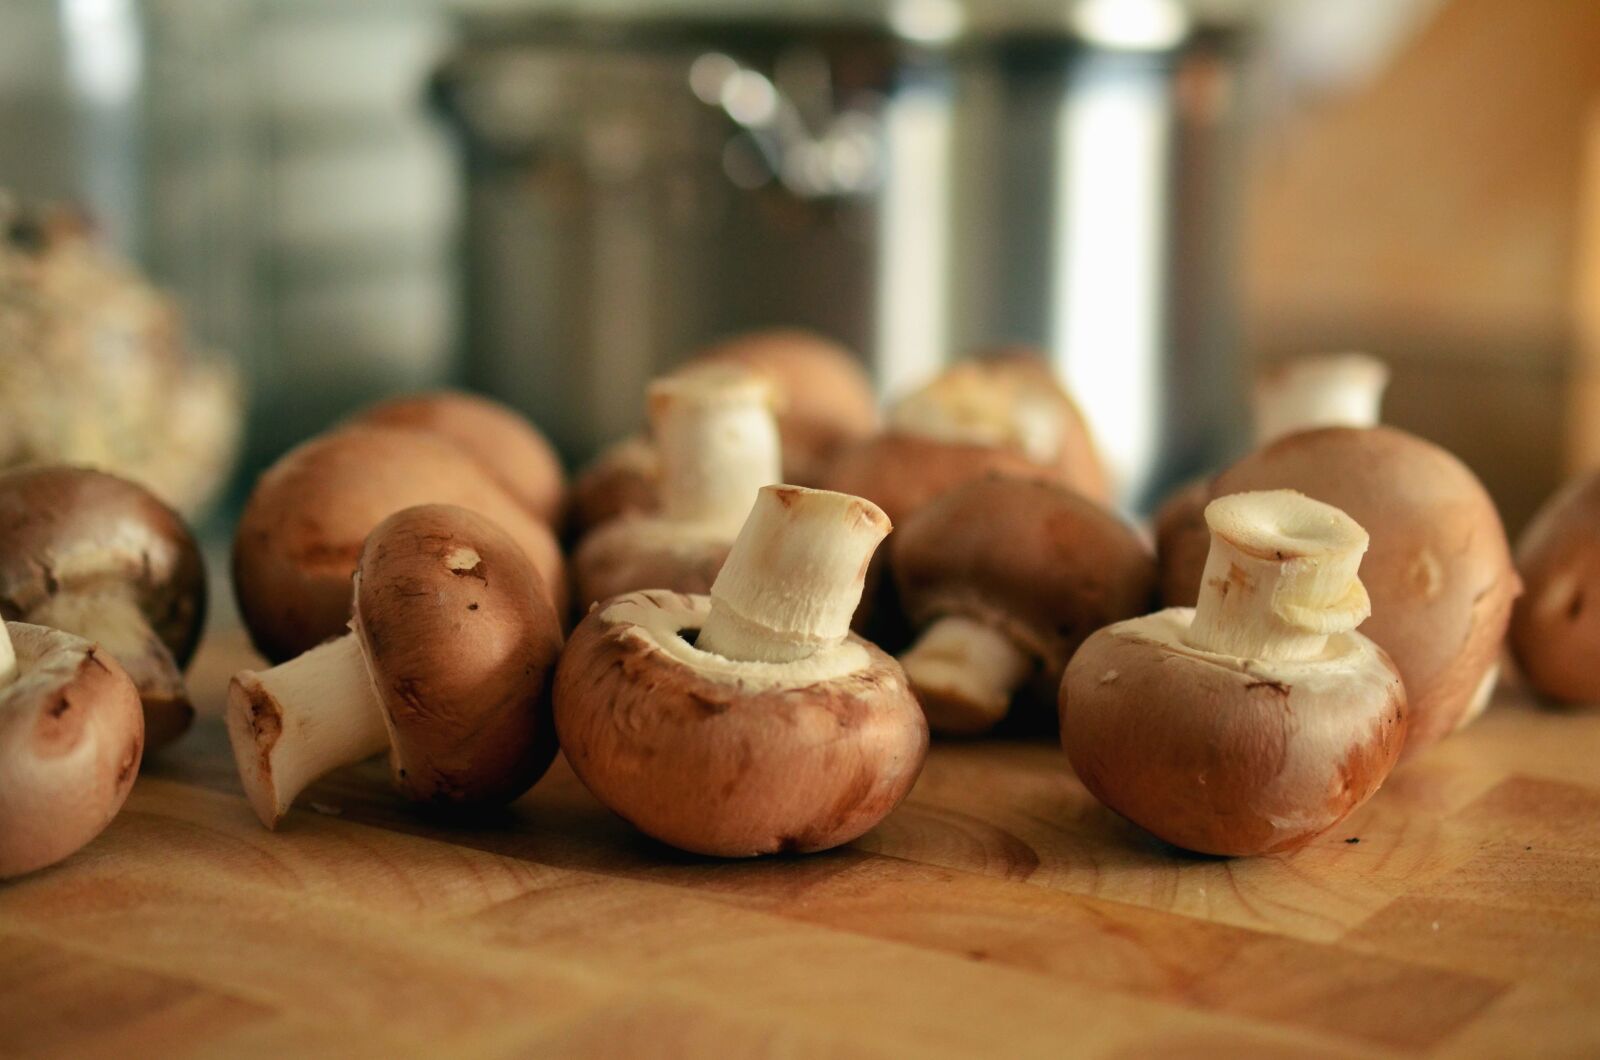 Nikon D5100 sample photo. Mushroom, food, table, vegetables photography